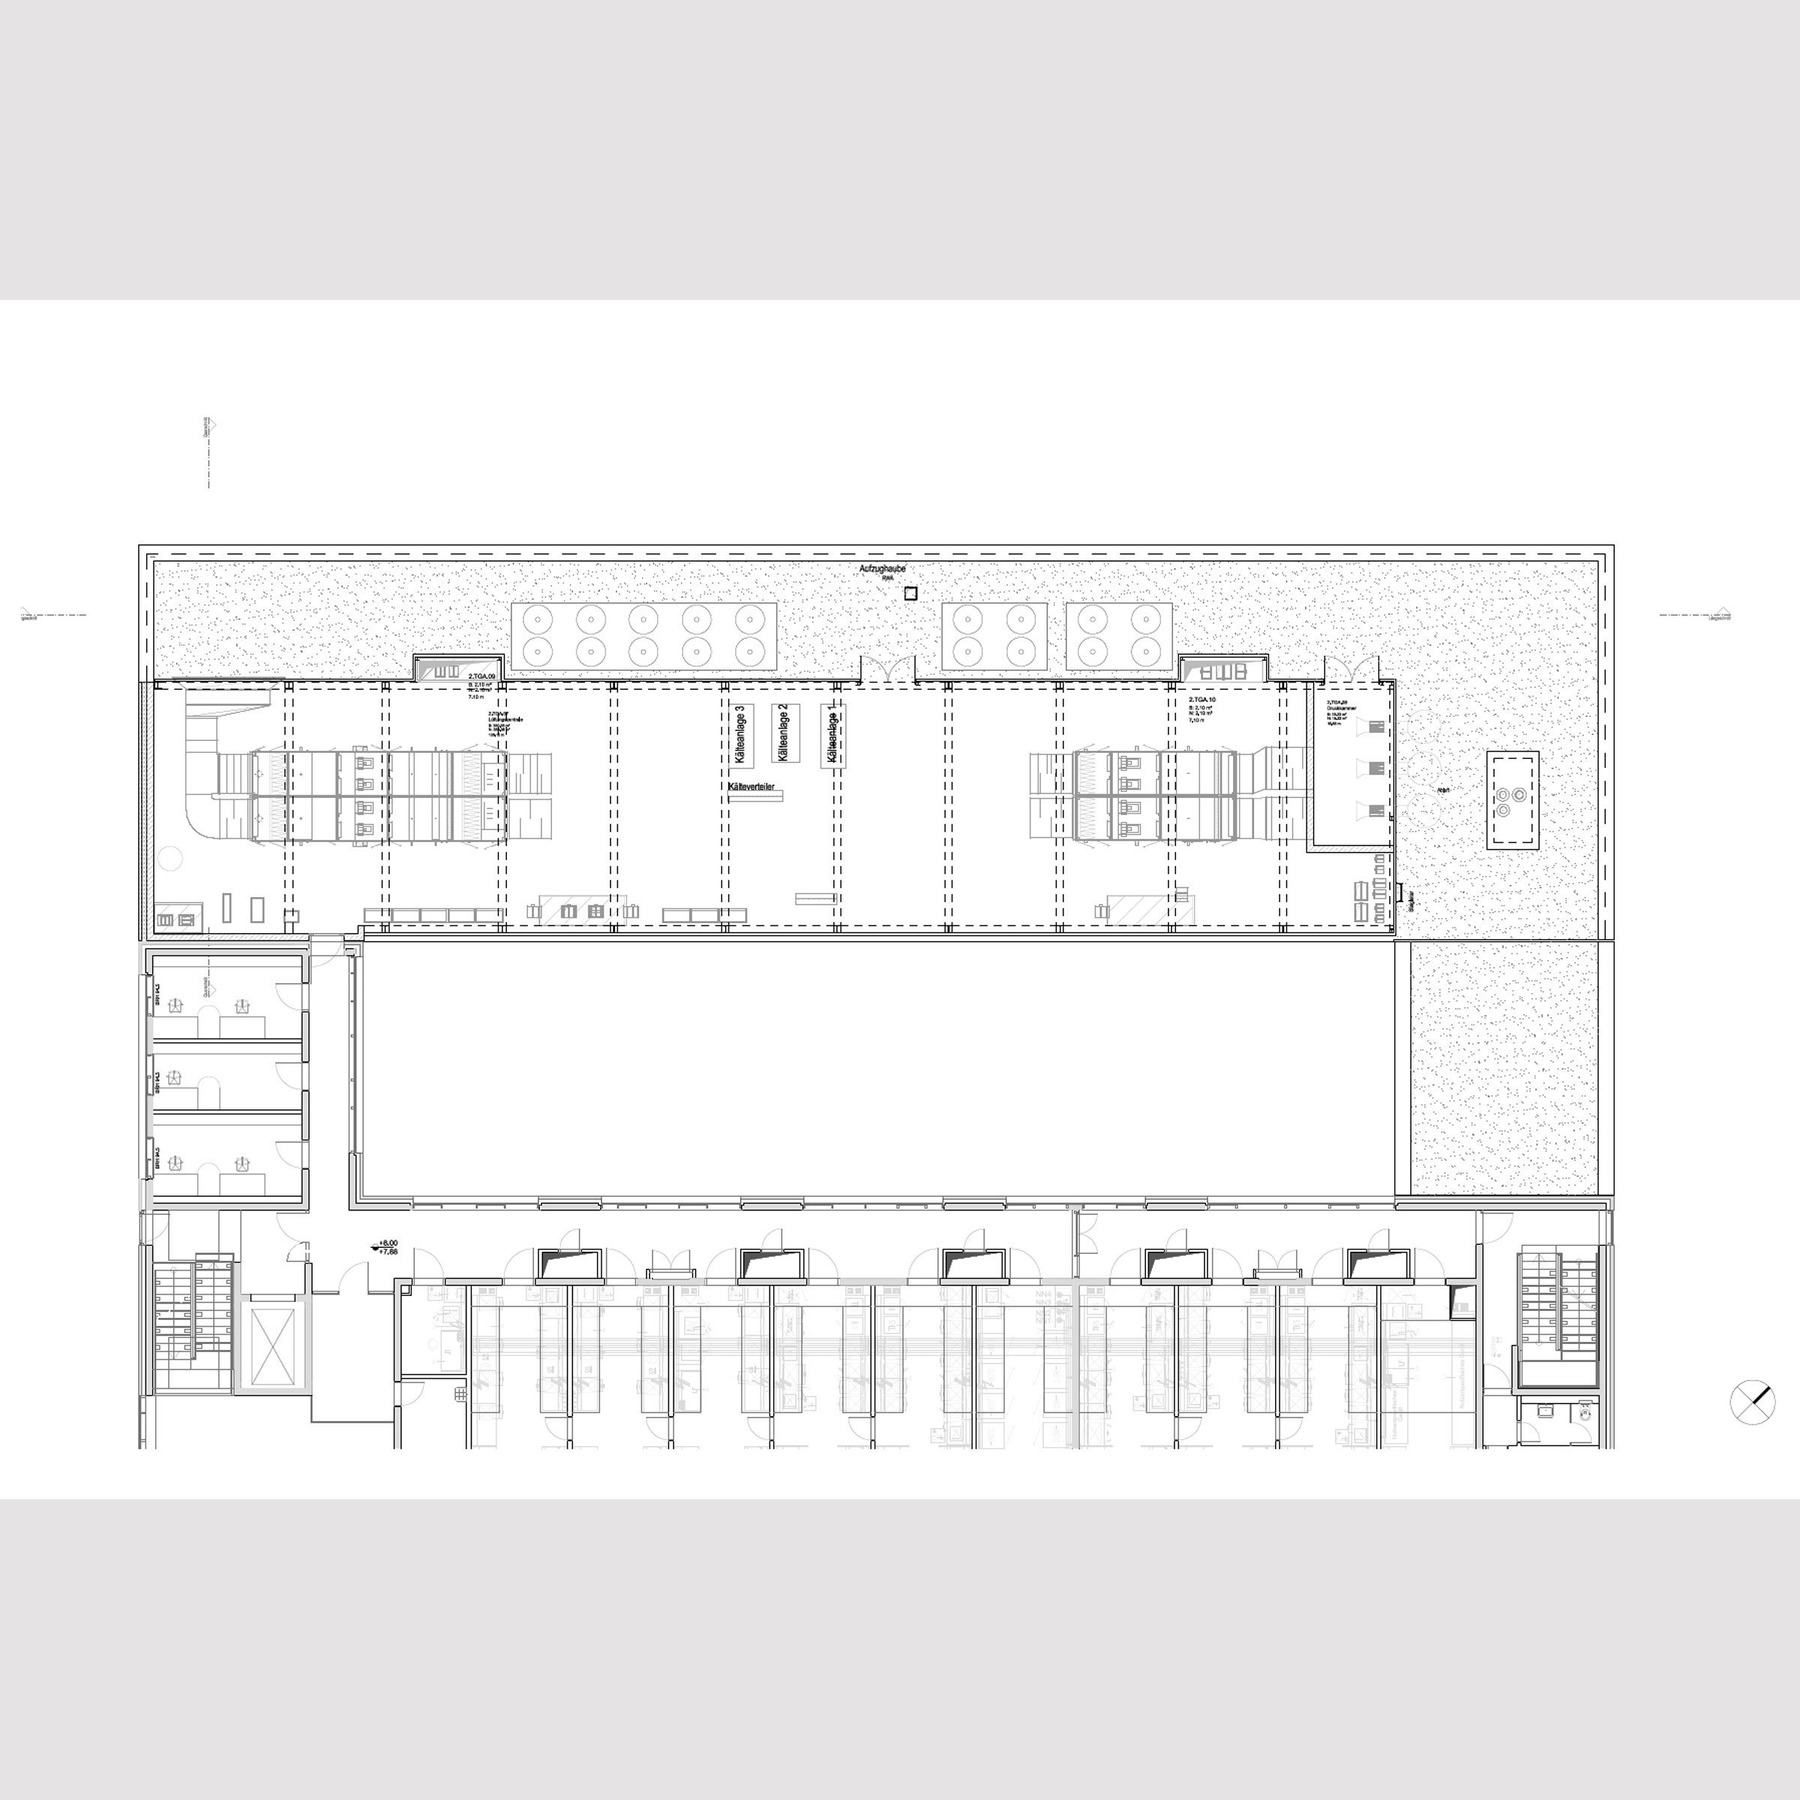 Grundriss 2. Obergeschoss © 2017 tönis + schroeter + jansen freie architekten gmbh, Lübeck